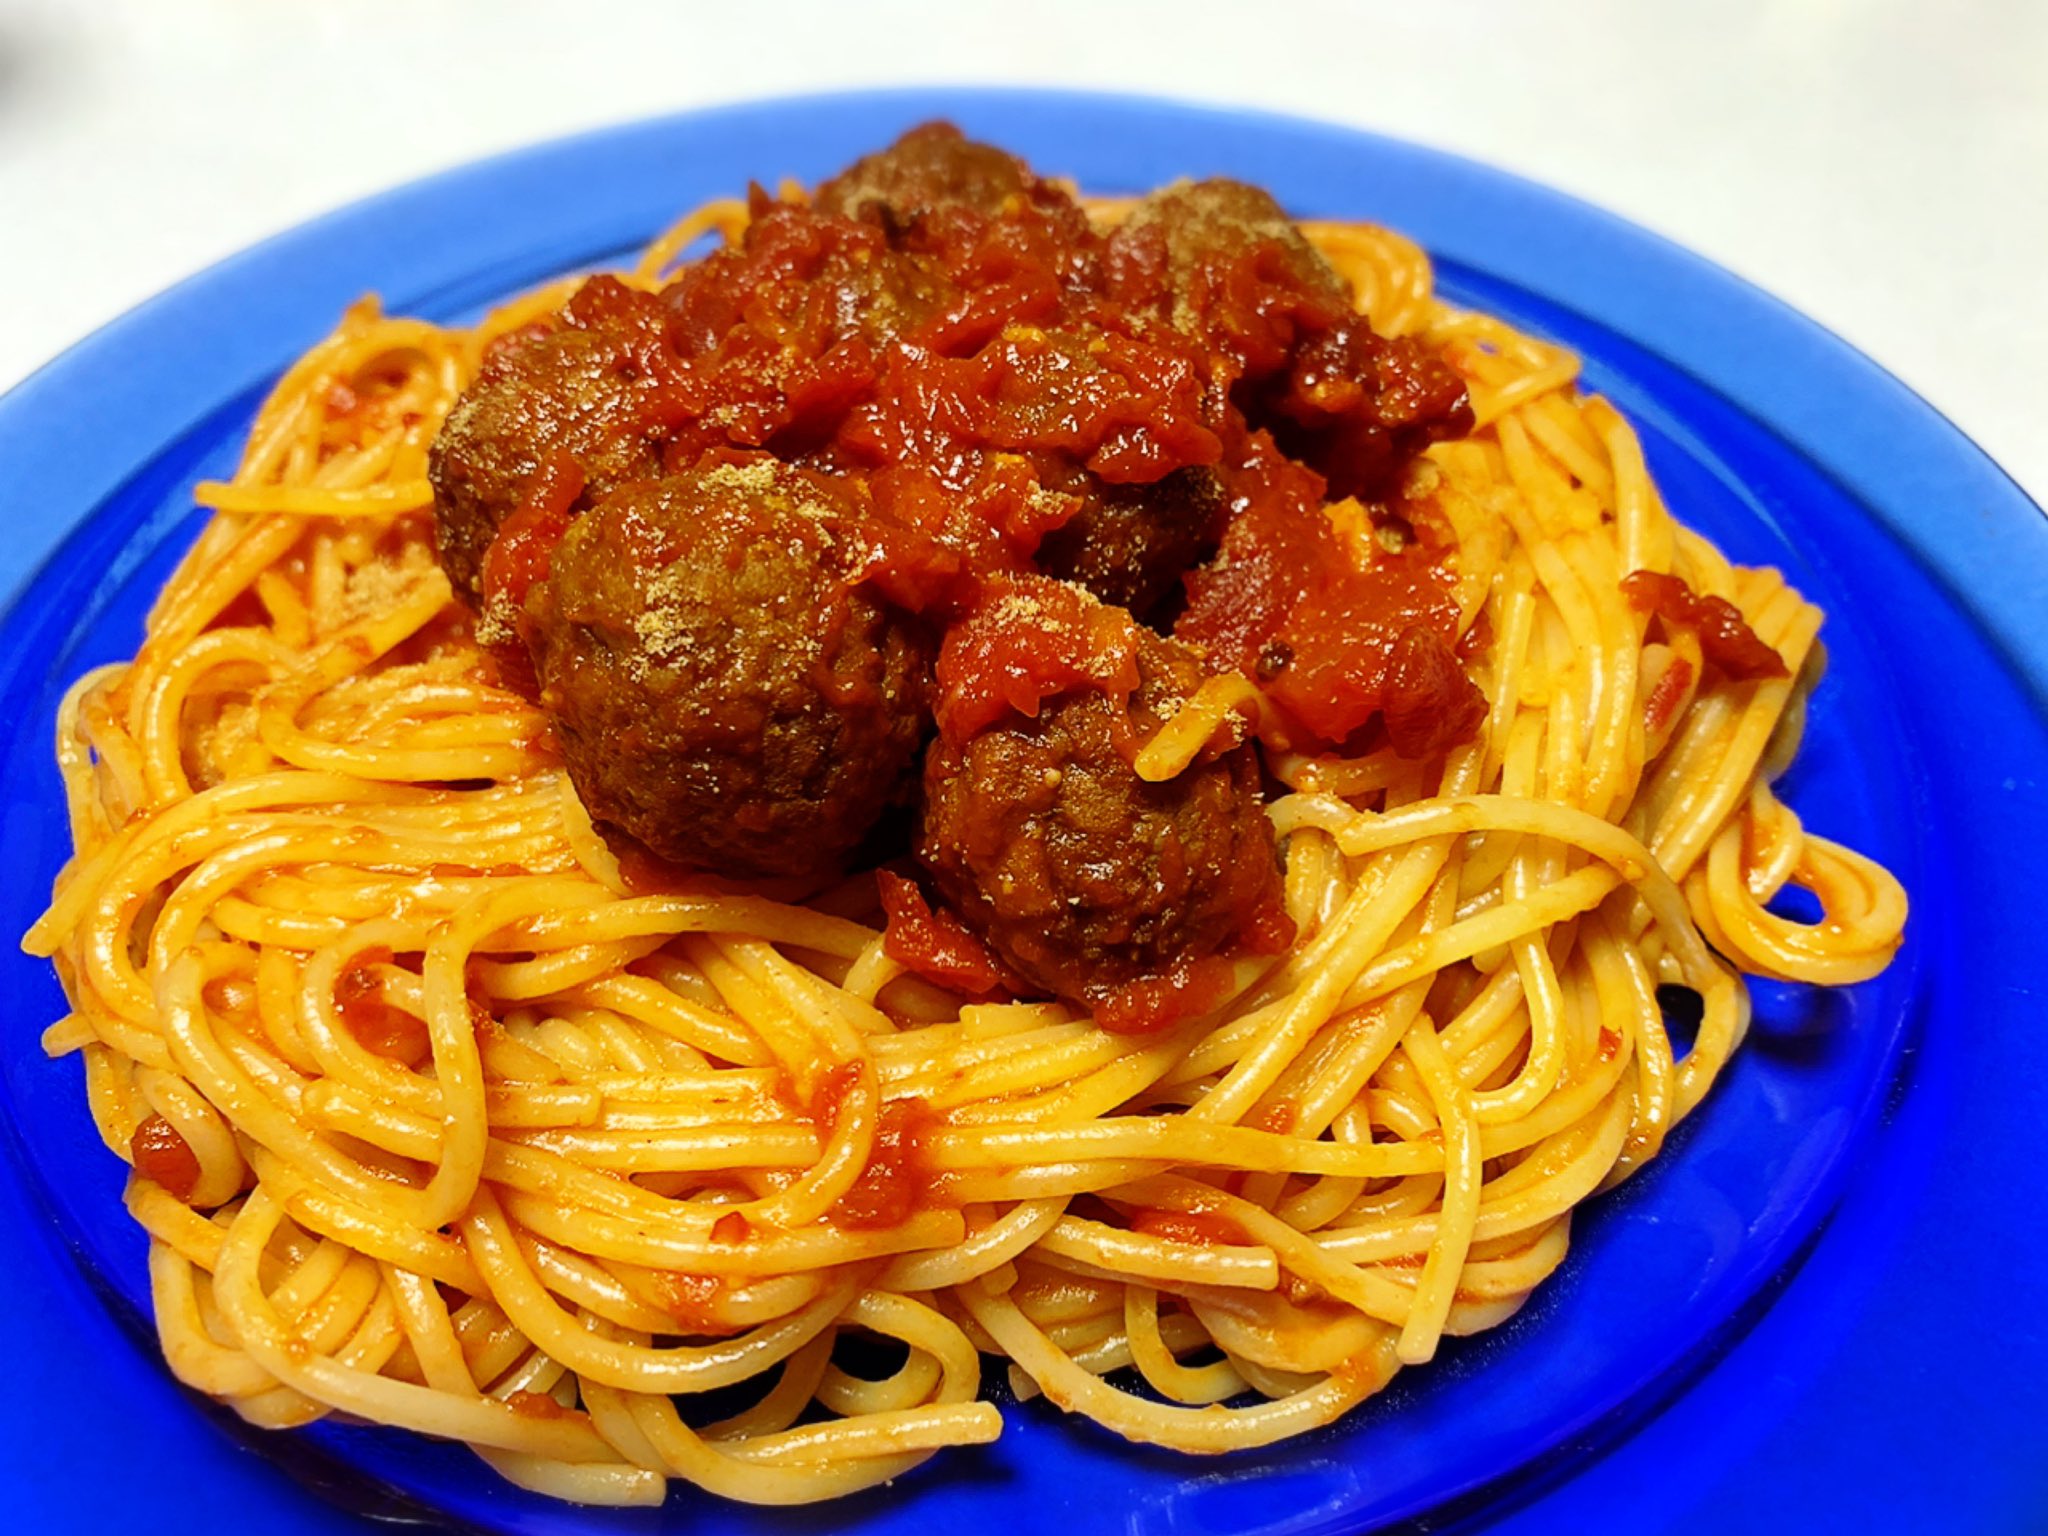 Nya Spaghetti With Meatballs 英語 表記にしたのは コレは決して カリオストロの城 ではなく わんわん物語 のメニューだからである 自宅めし パスタ ミートボールパスタ ミートボールスパゲッティ Spaghettiwithmeatballs わんわん物語